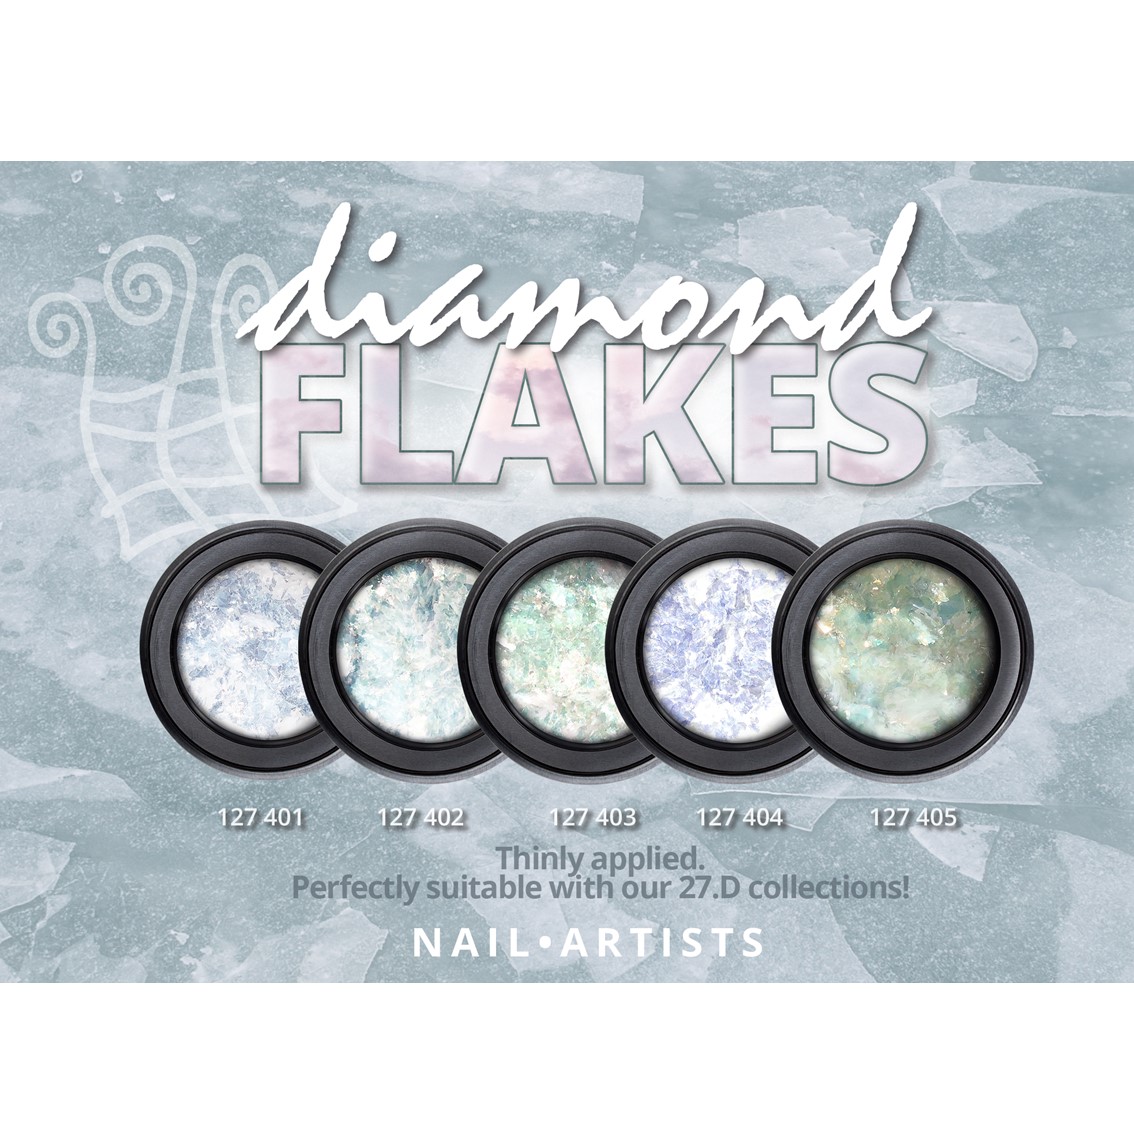 Nail Artists Diamond Flakes 005